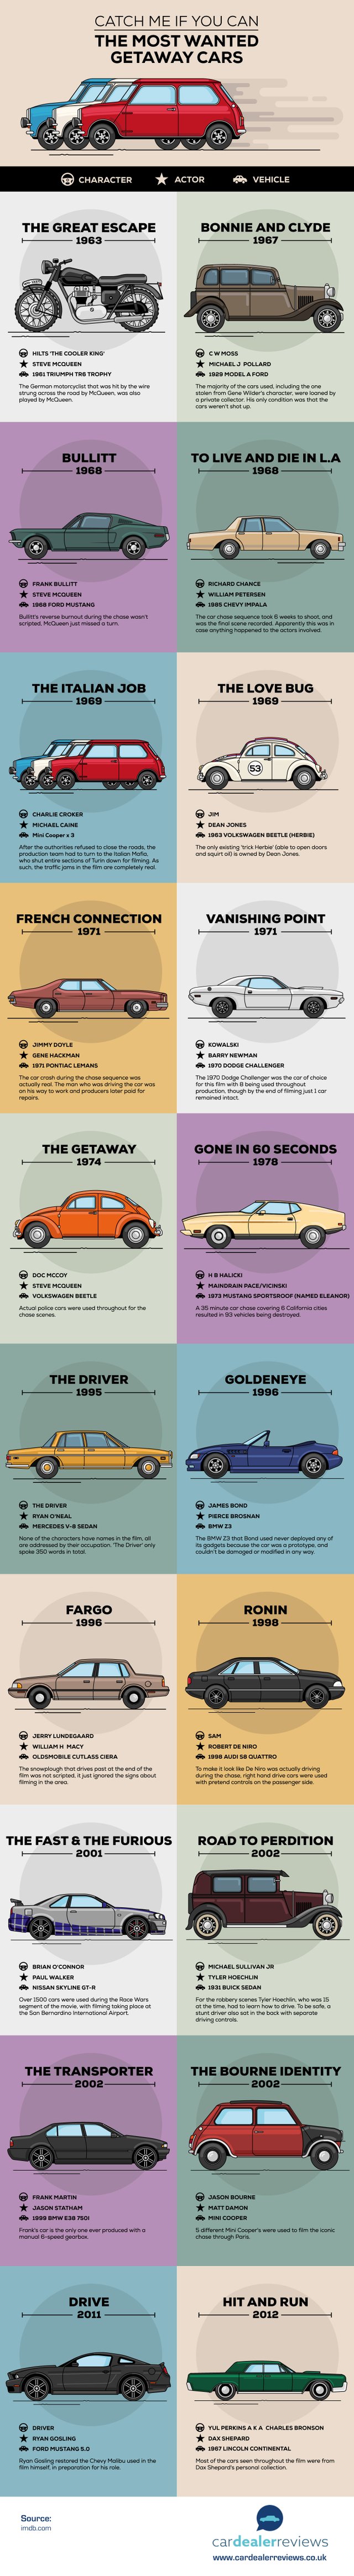 getaway-cars.jpg